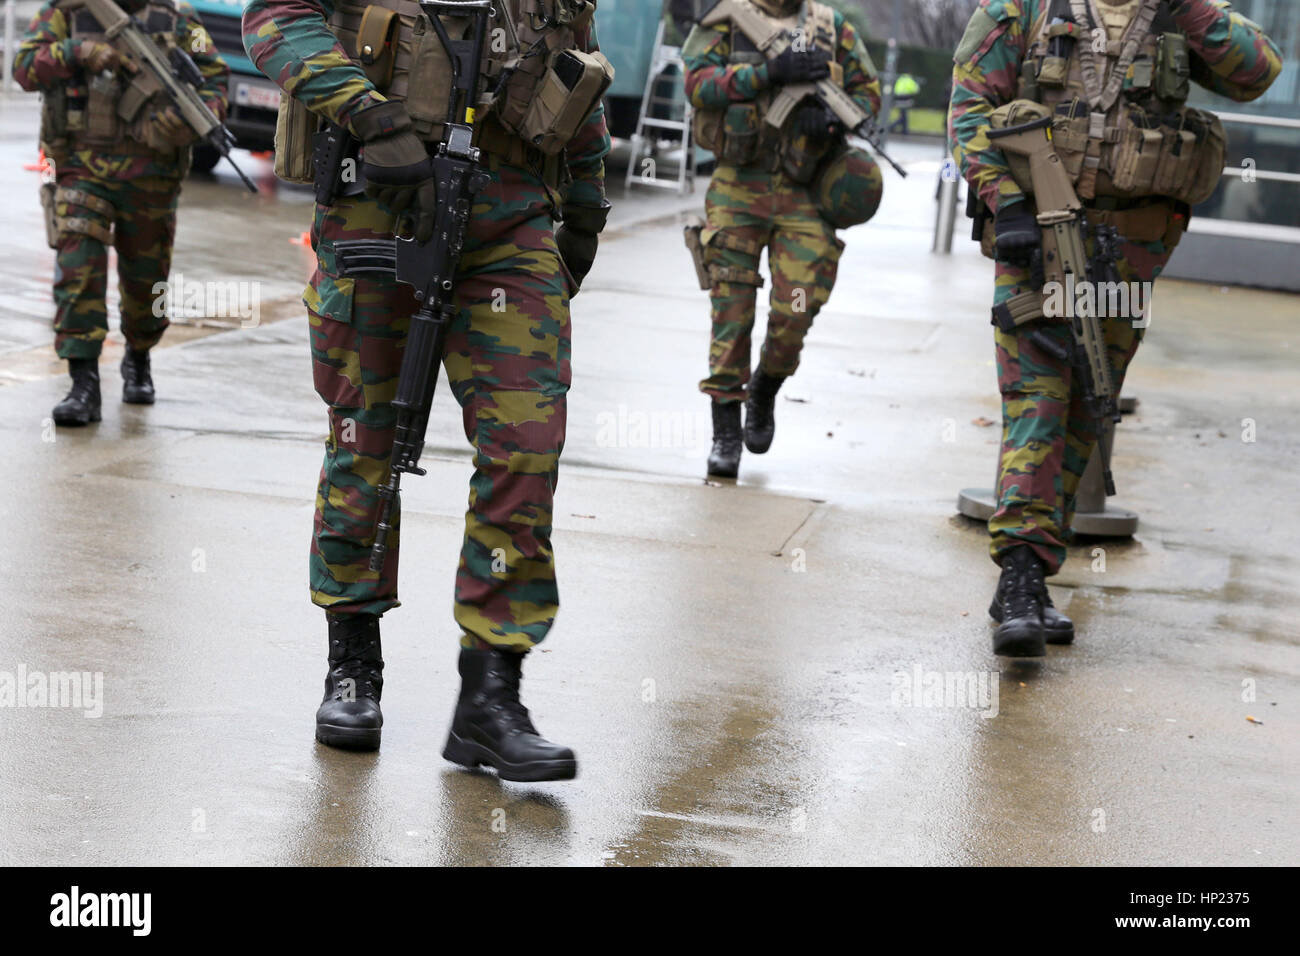 Guardia de soldados belgas de las instituciones europeas. La gente irreconocible en uniformes. Las medidas de seguridad tras los atentados de Bruselas de 2016. Sólo las piernas. Foto de stock